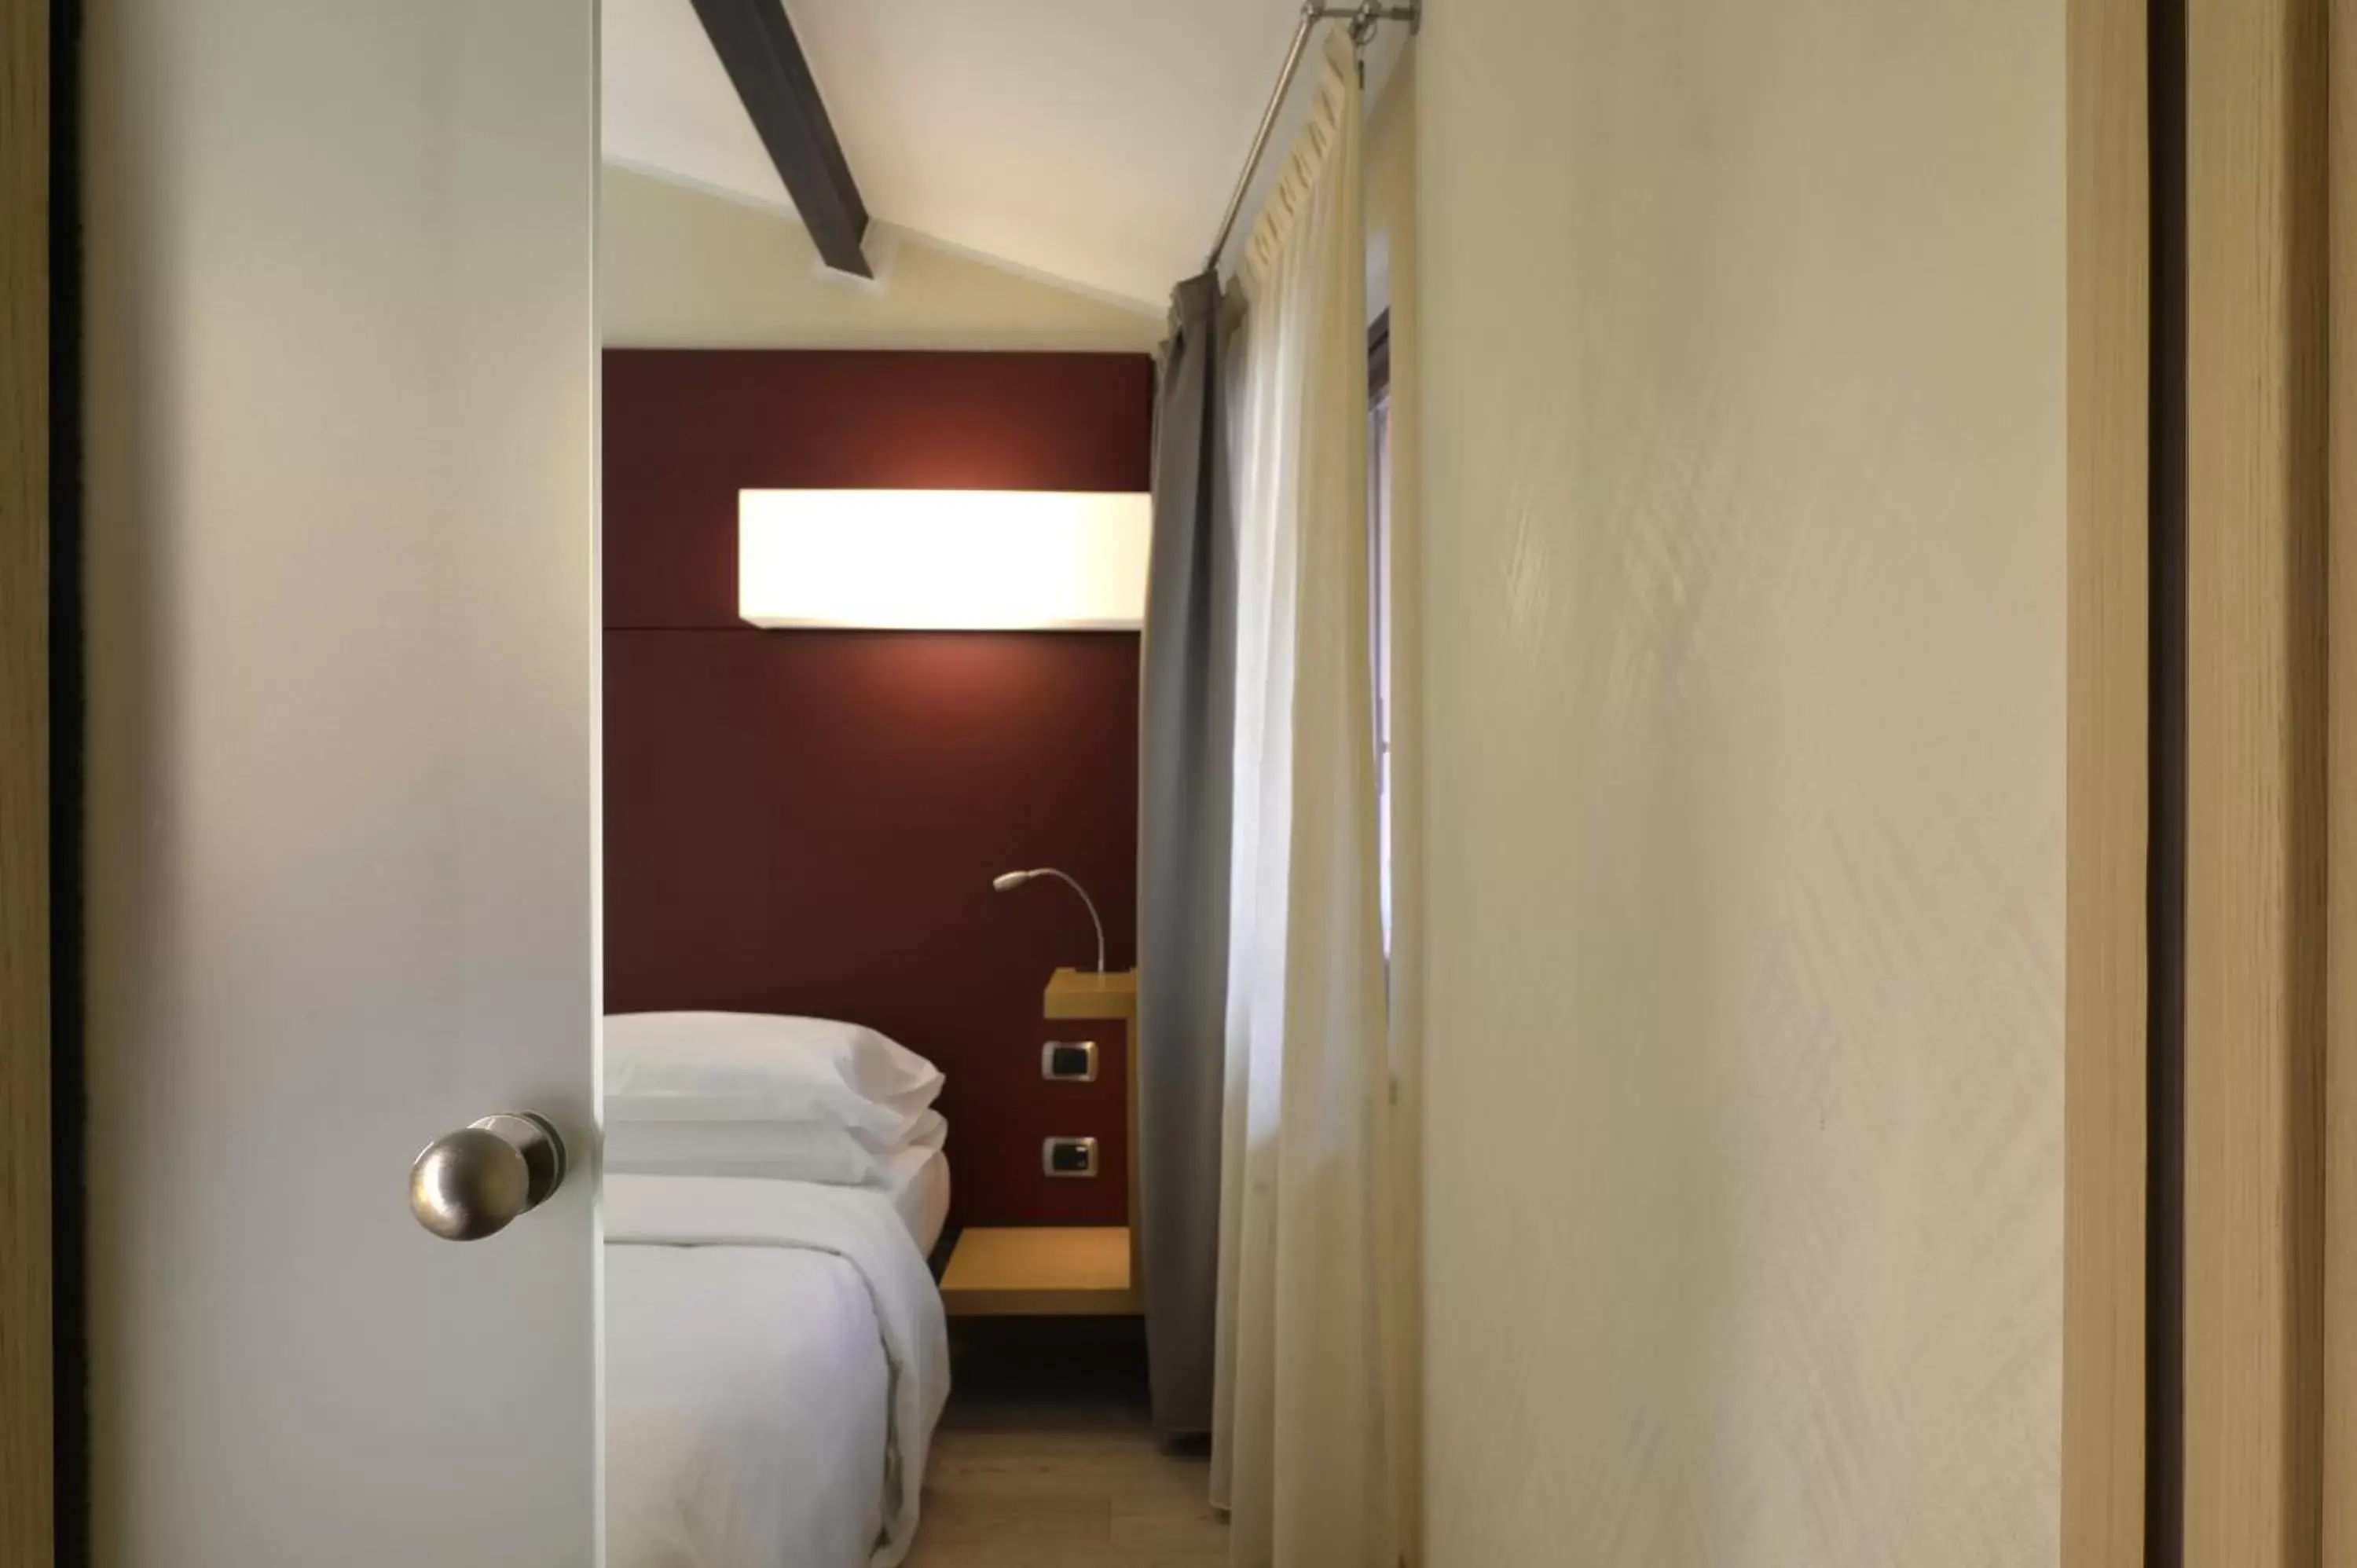 Bedroom, Bathroom in Best Western Hotel Armando